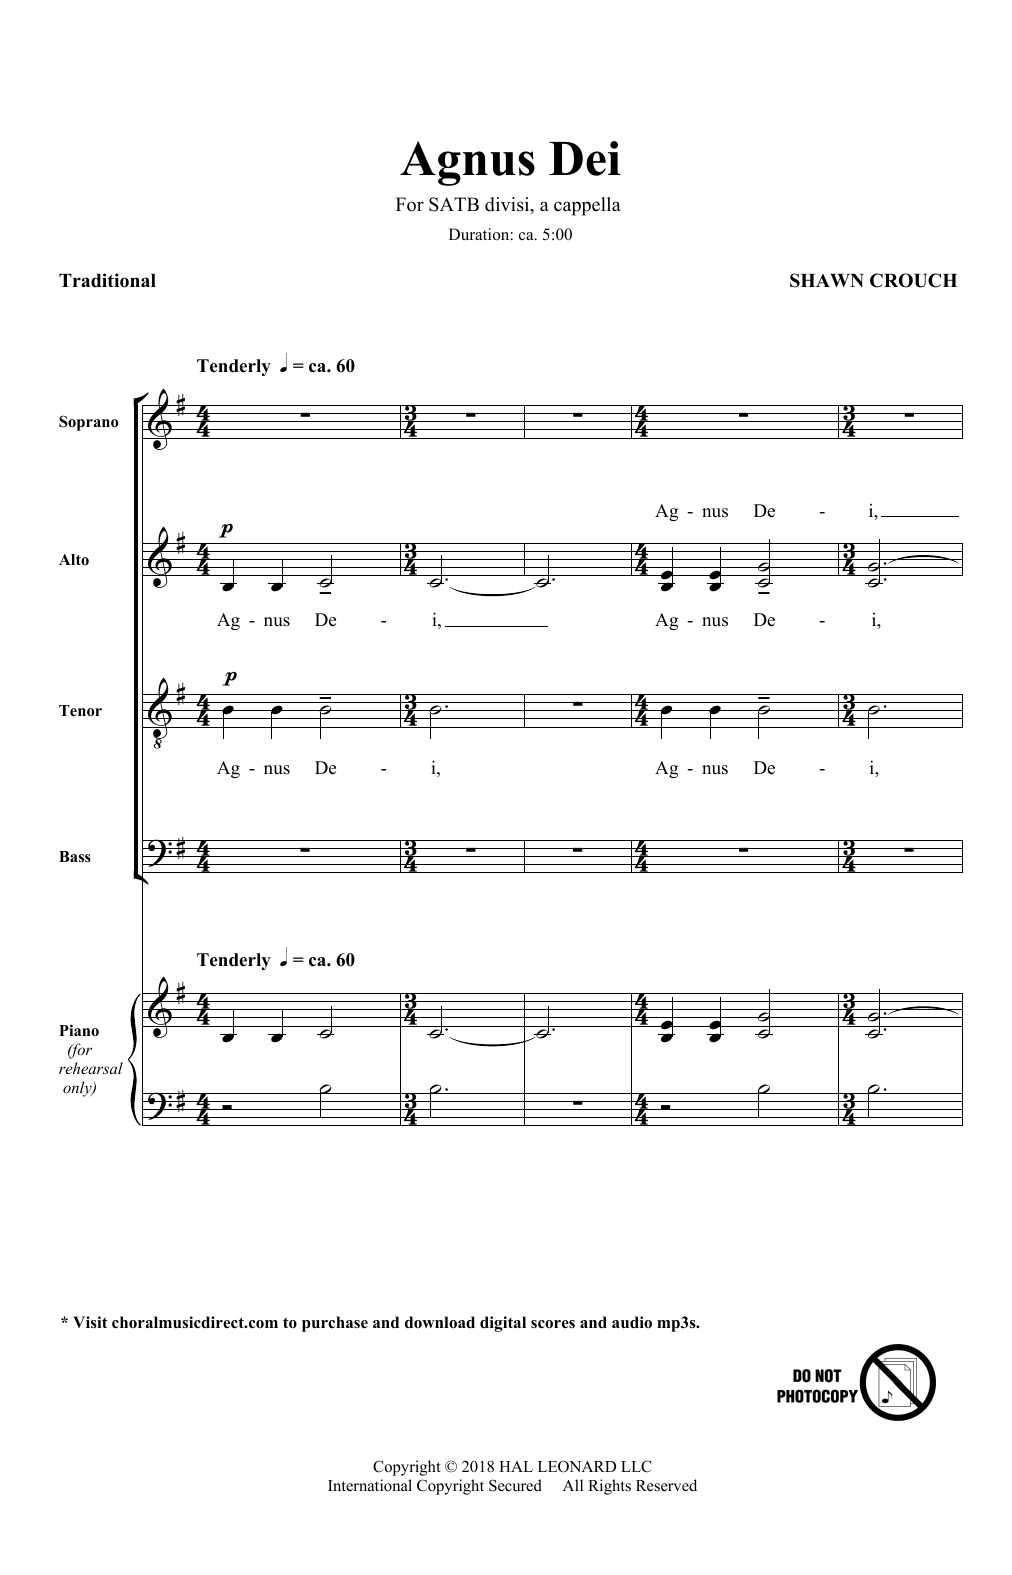 Shawn Crouch Agnus Dei Sheet Music Notes & Chords for SATB Choir - Download or Print PDF